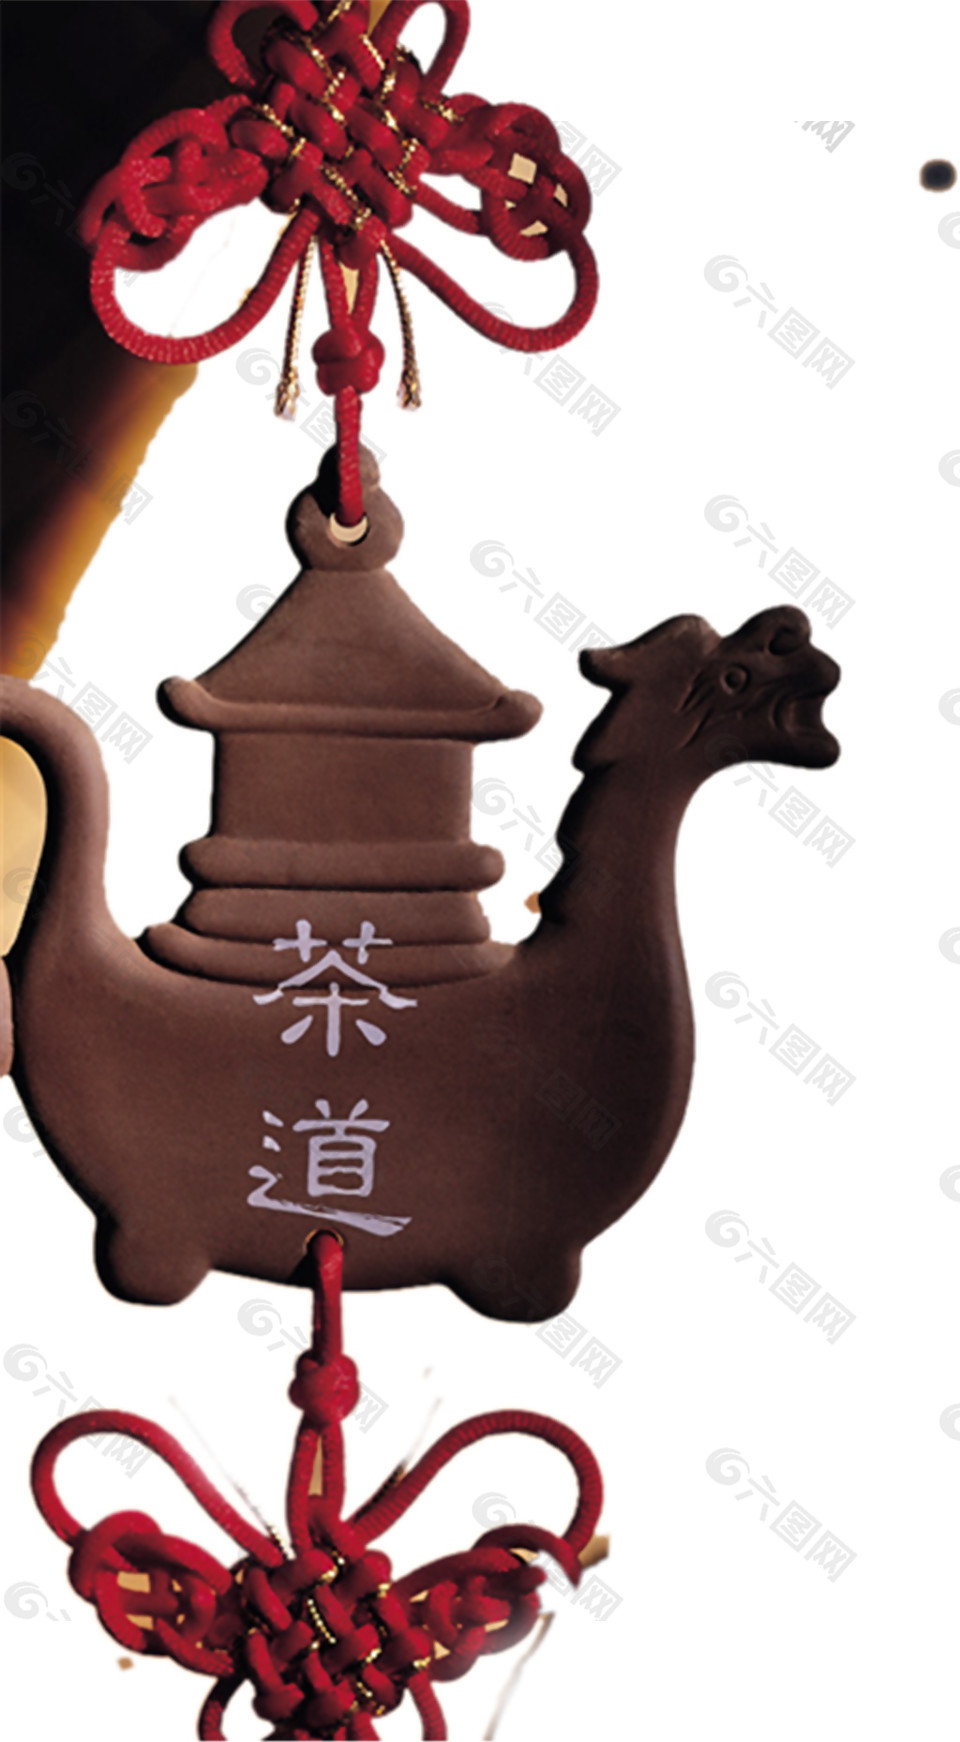 特色茶道木雕中国结元素挂饰